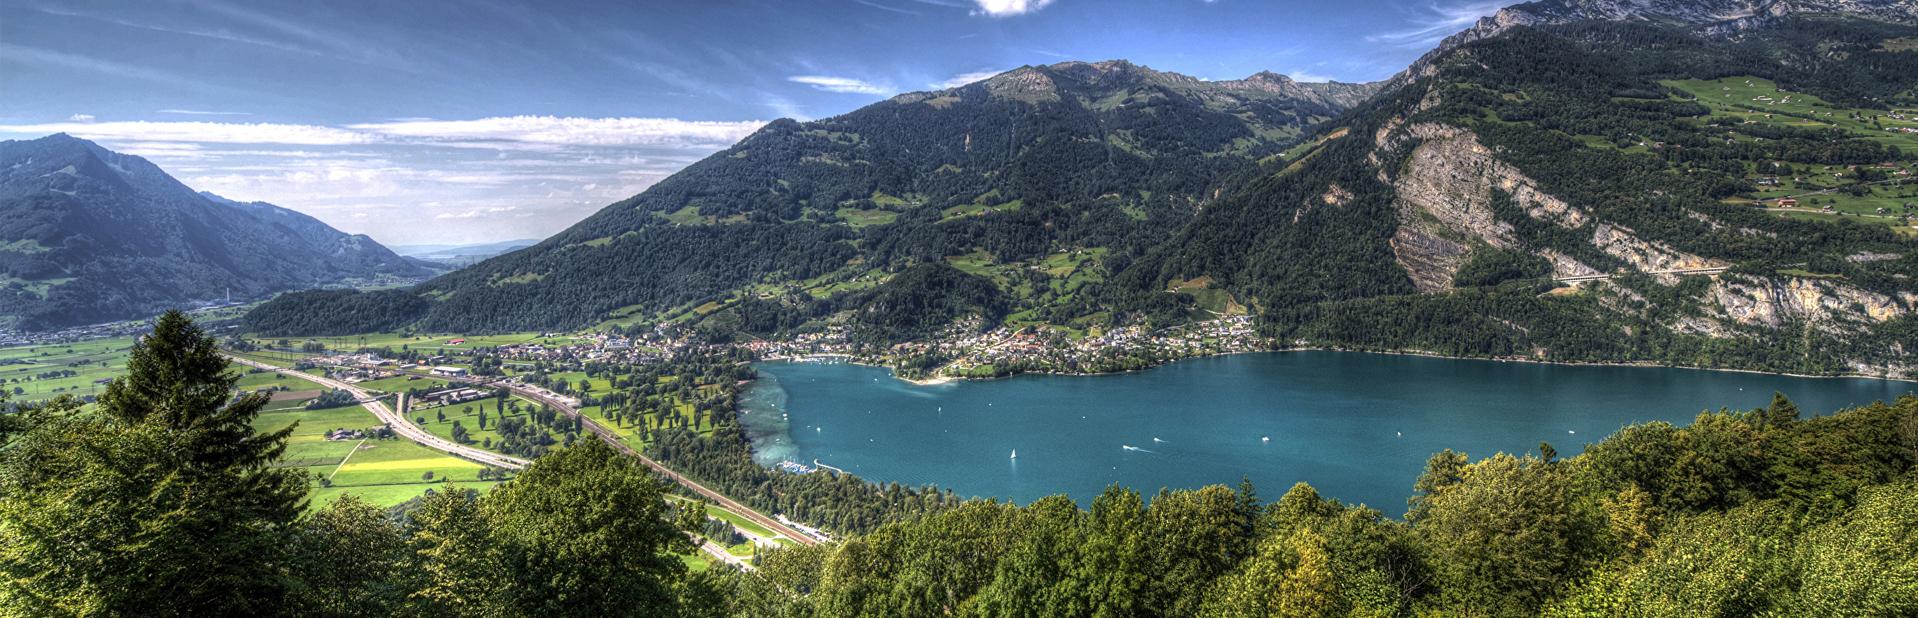 Индивидуальные туры в Швейцарию цены